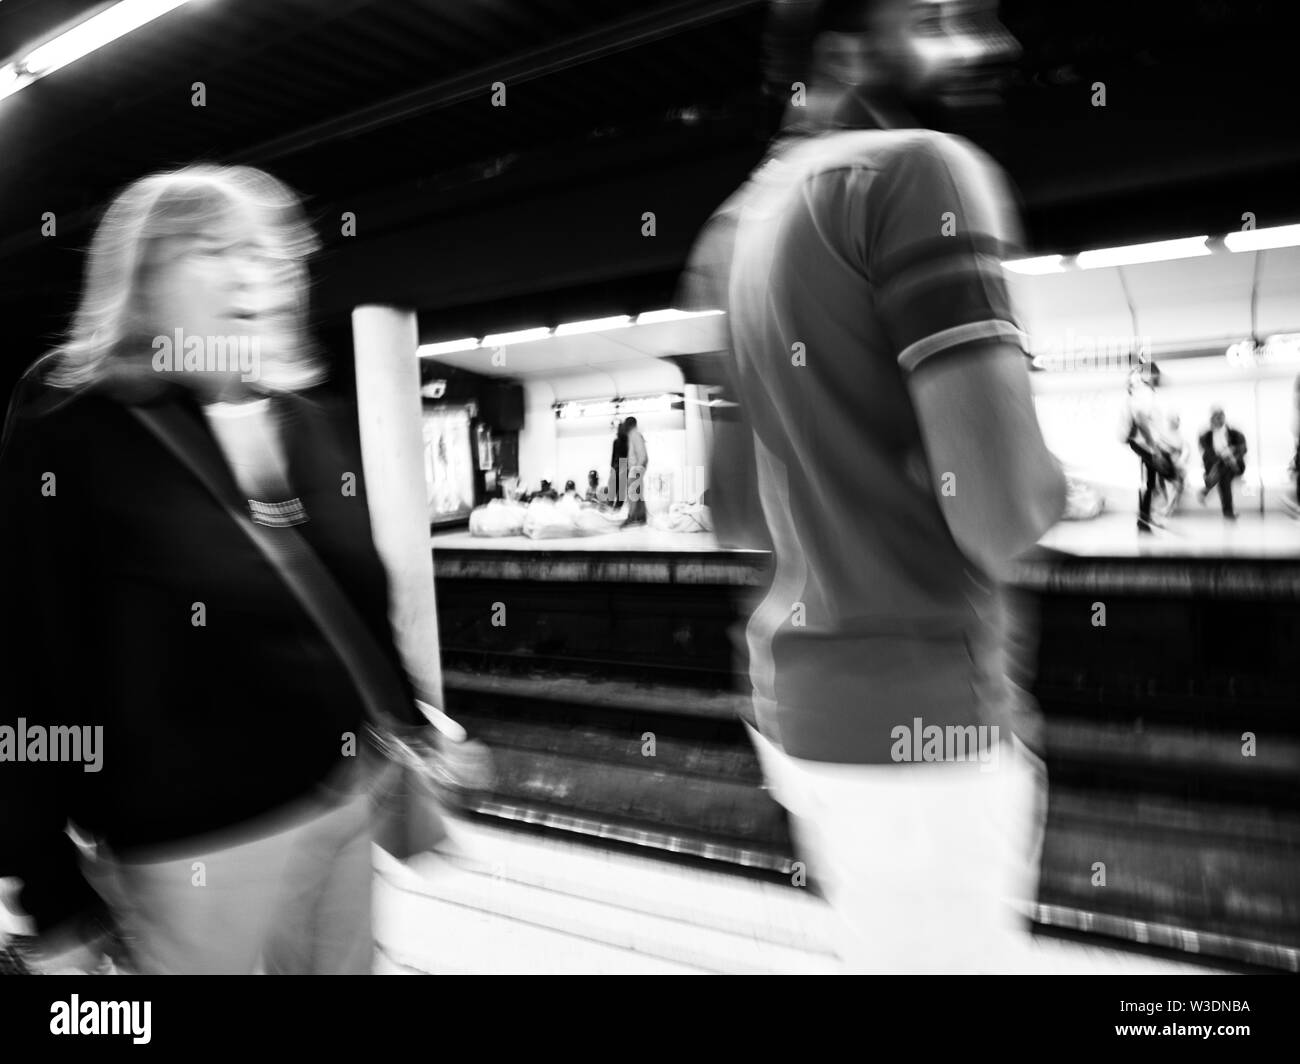 Flou flou intérieur marche silhouettes de personnes de la station de métro de Barcelone avec des silhouettes de migrants sans-abri dormant sur la plate-forme du train - noir et blanc. Banque D'Images